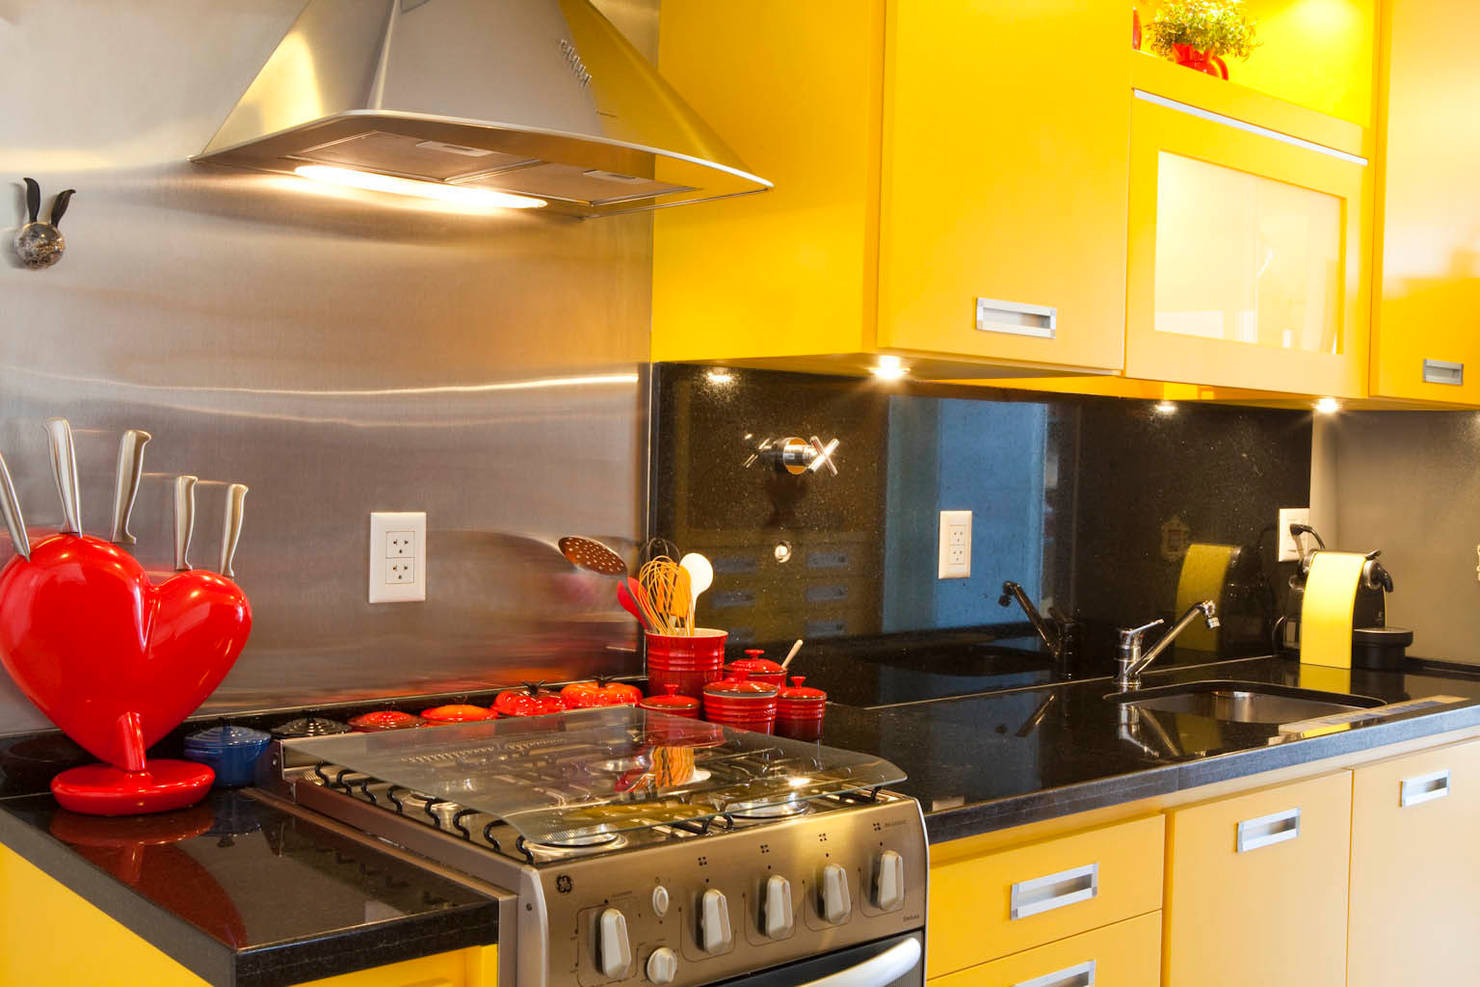 9 новых идей для дизайна кухонного фартука- фотографии
				